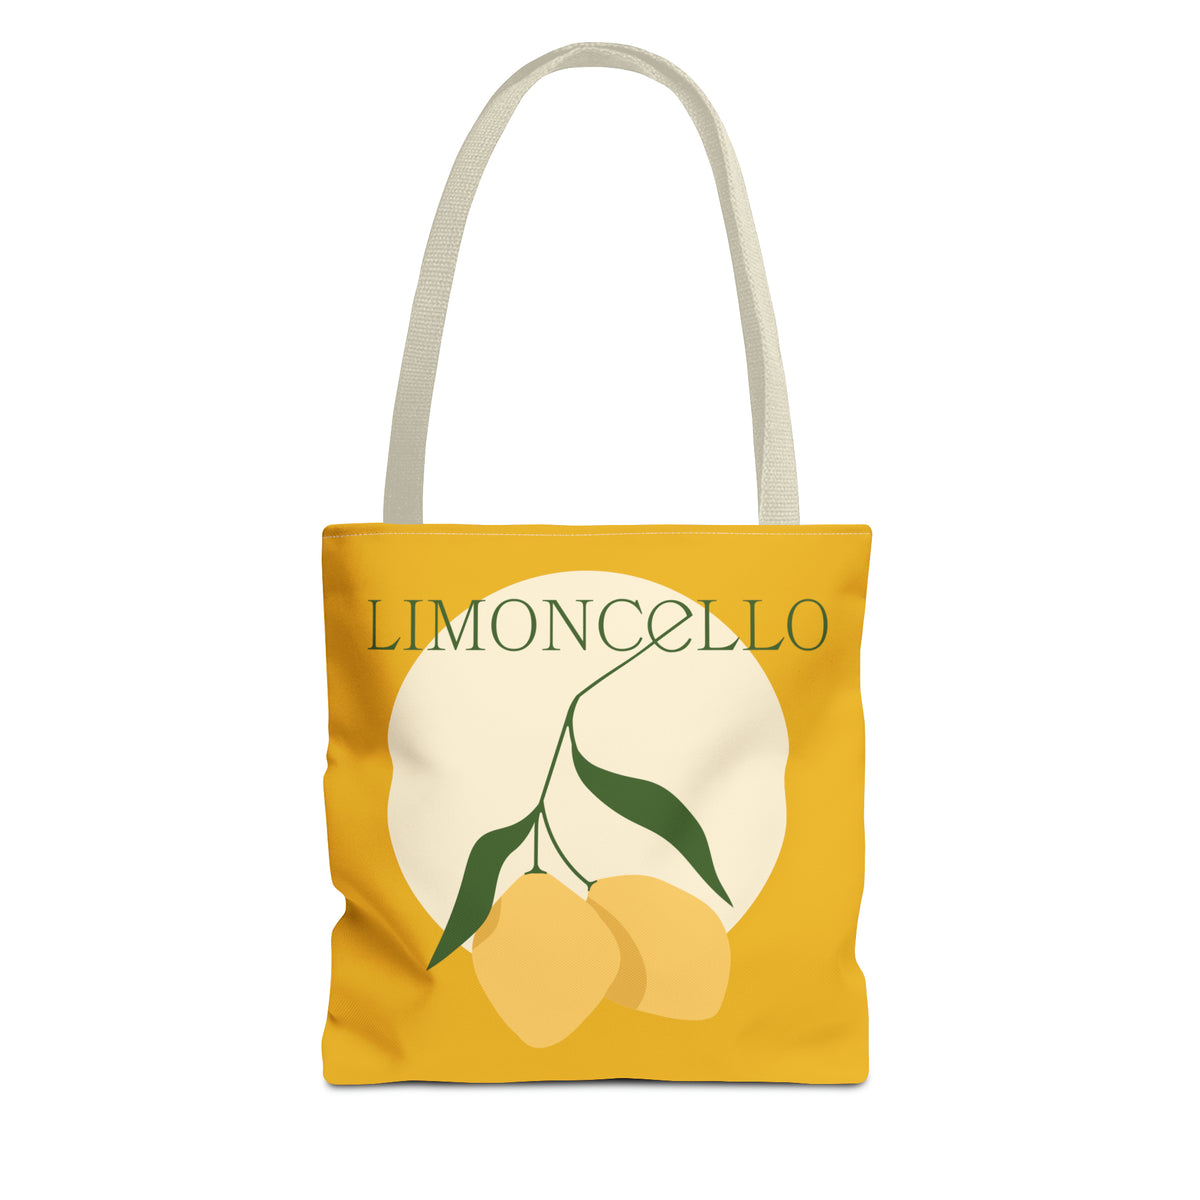 Limoncello Tote Bag